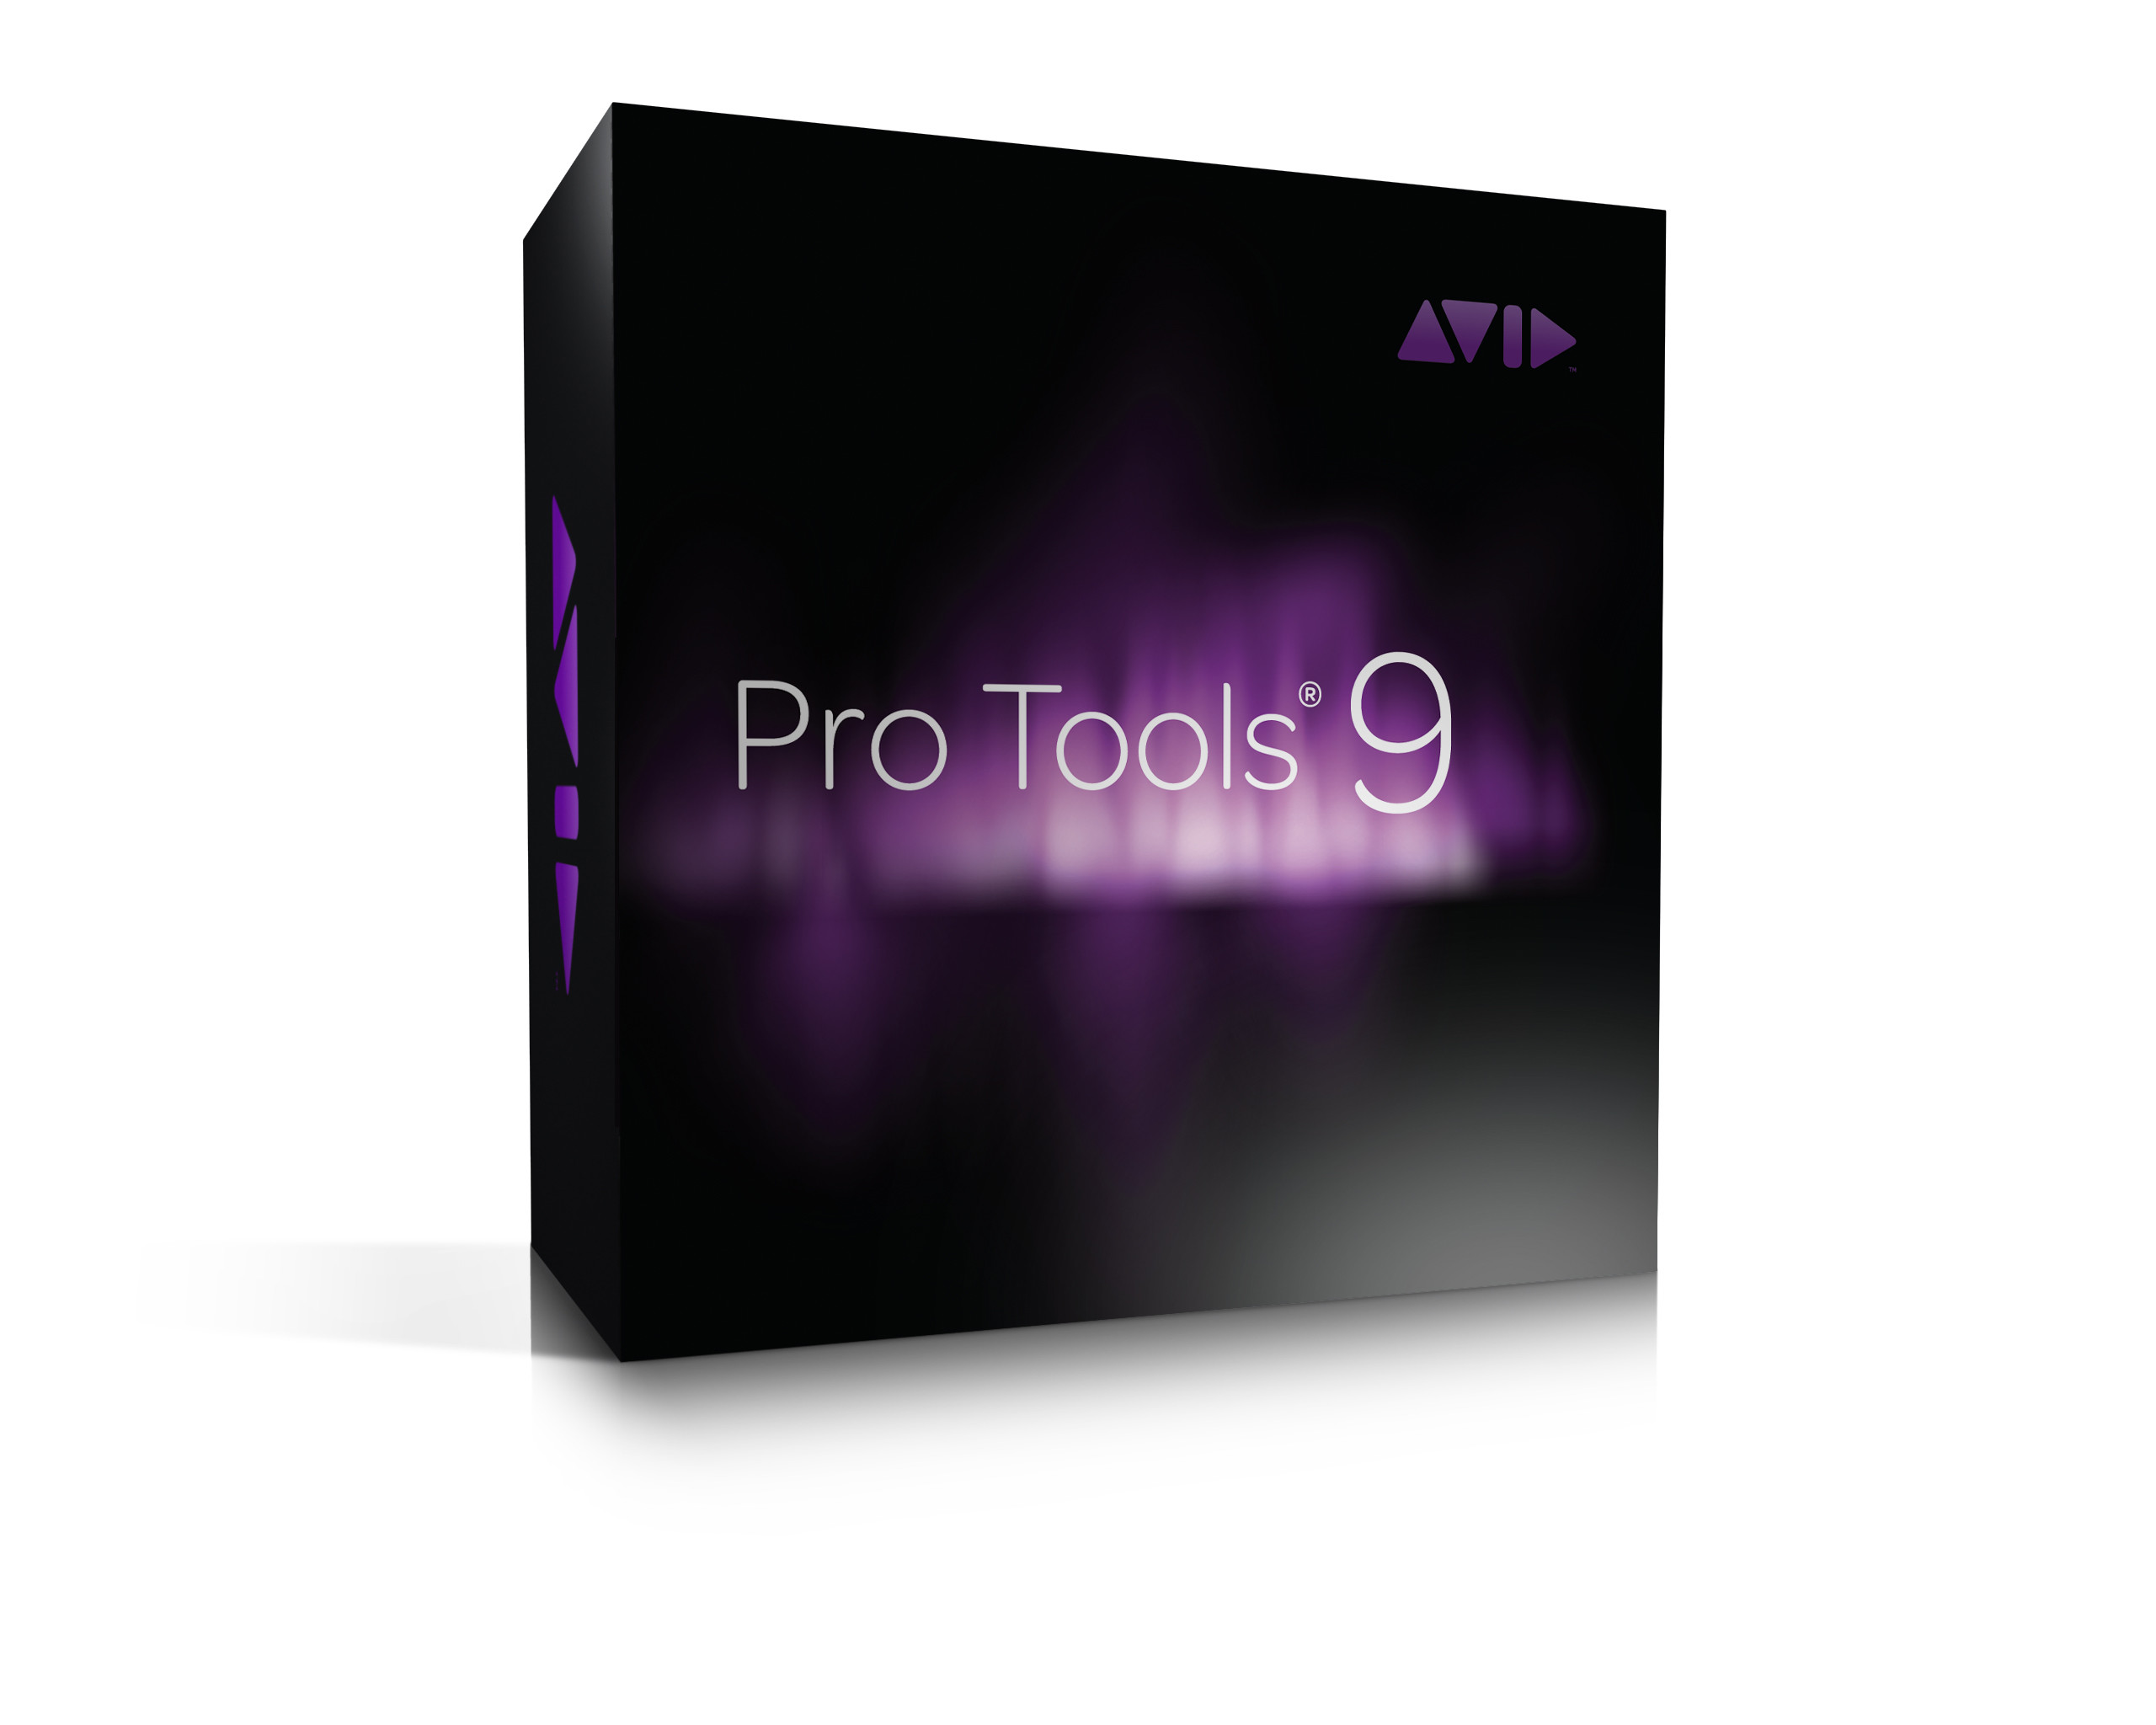 2560x2048 Avid Pro Tools 9 pianotech images